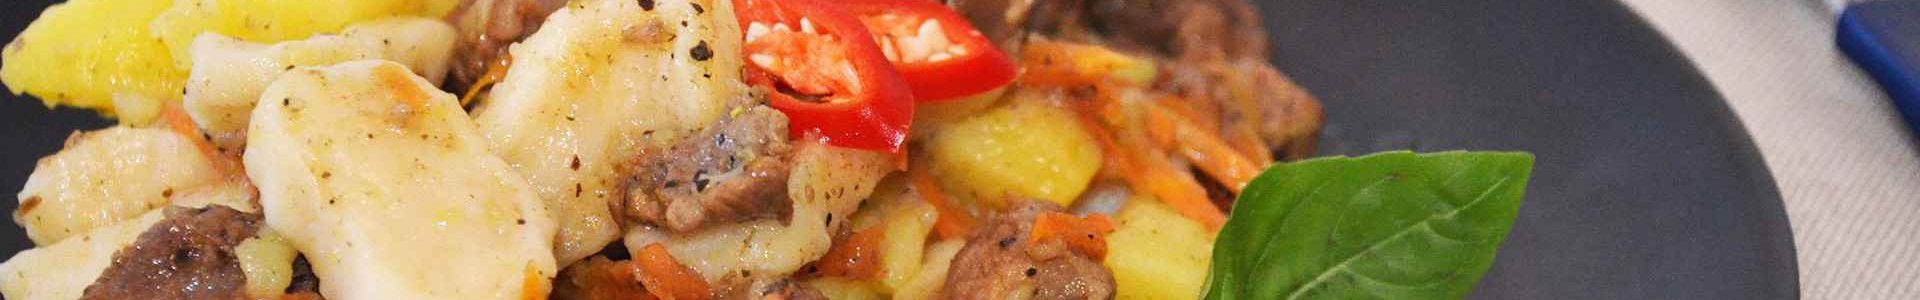 Картофель с галушками и мясом